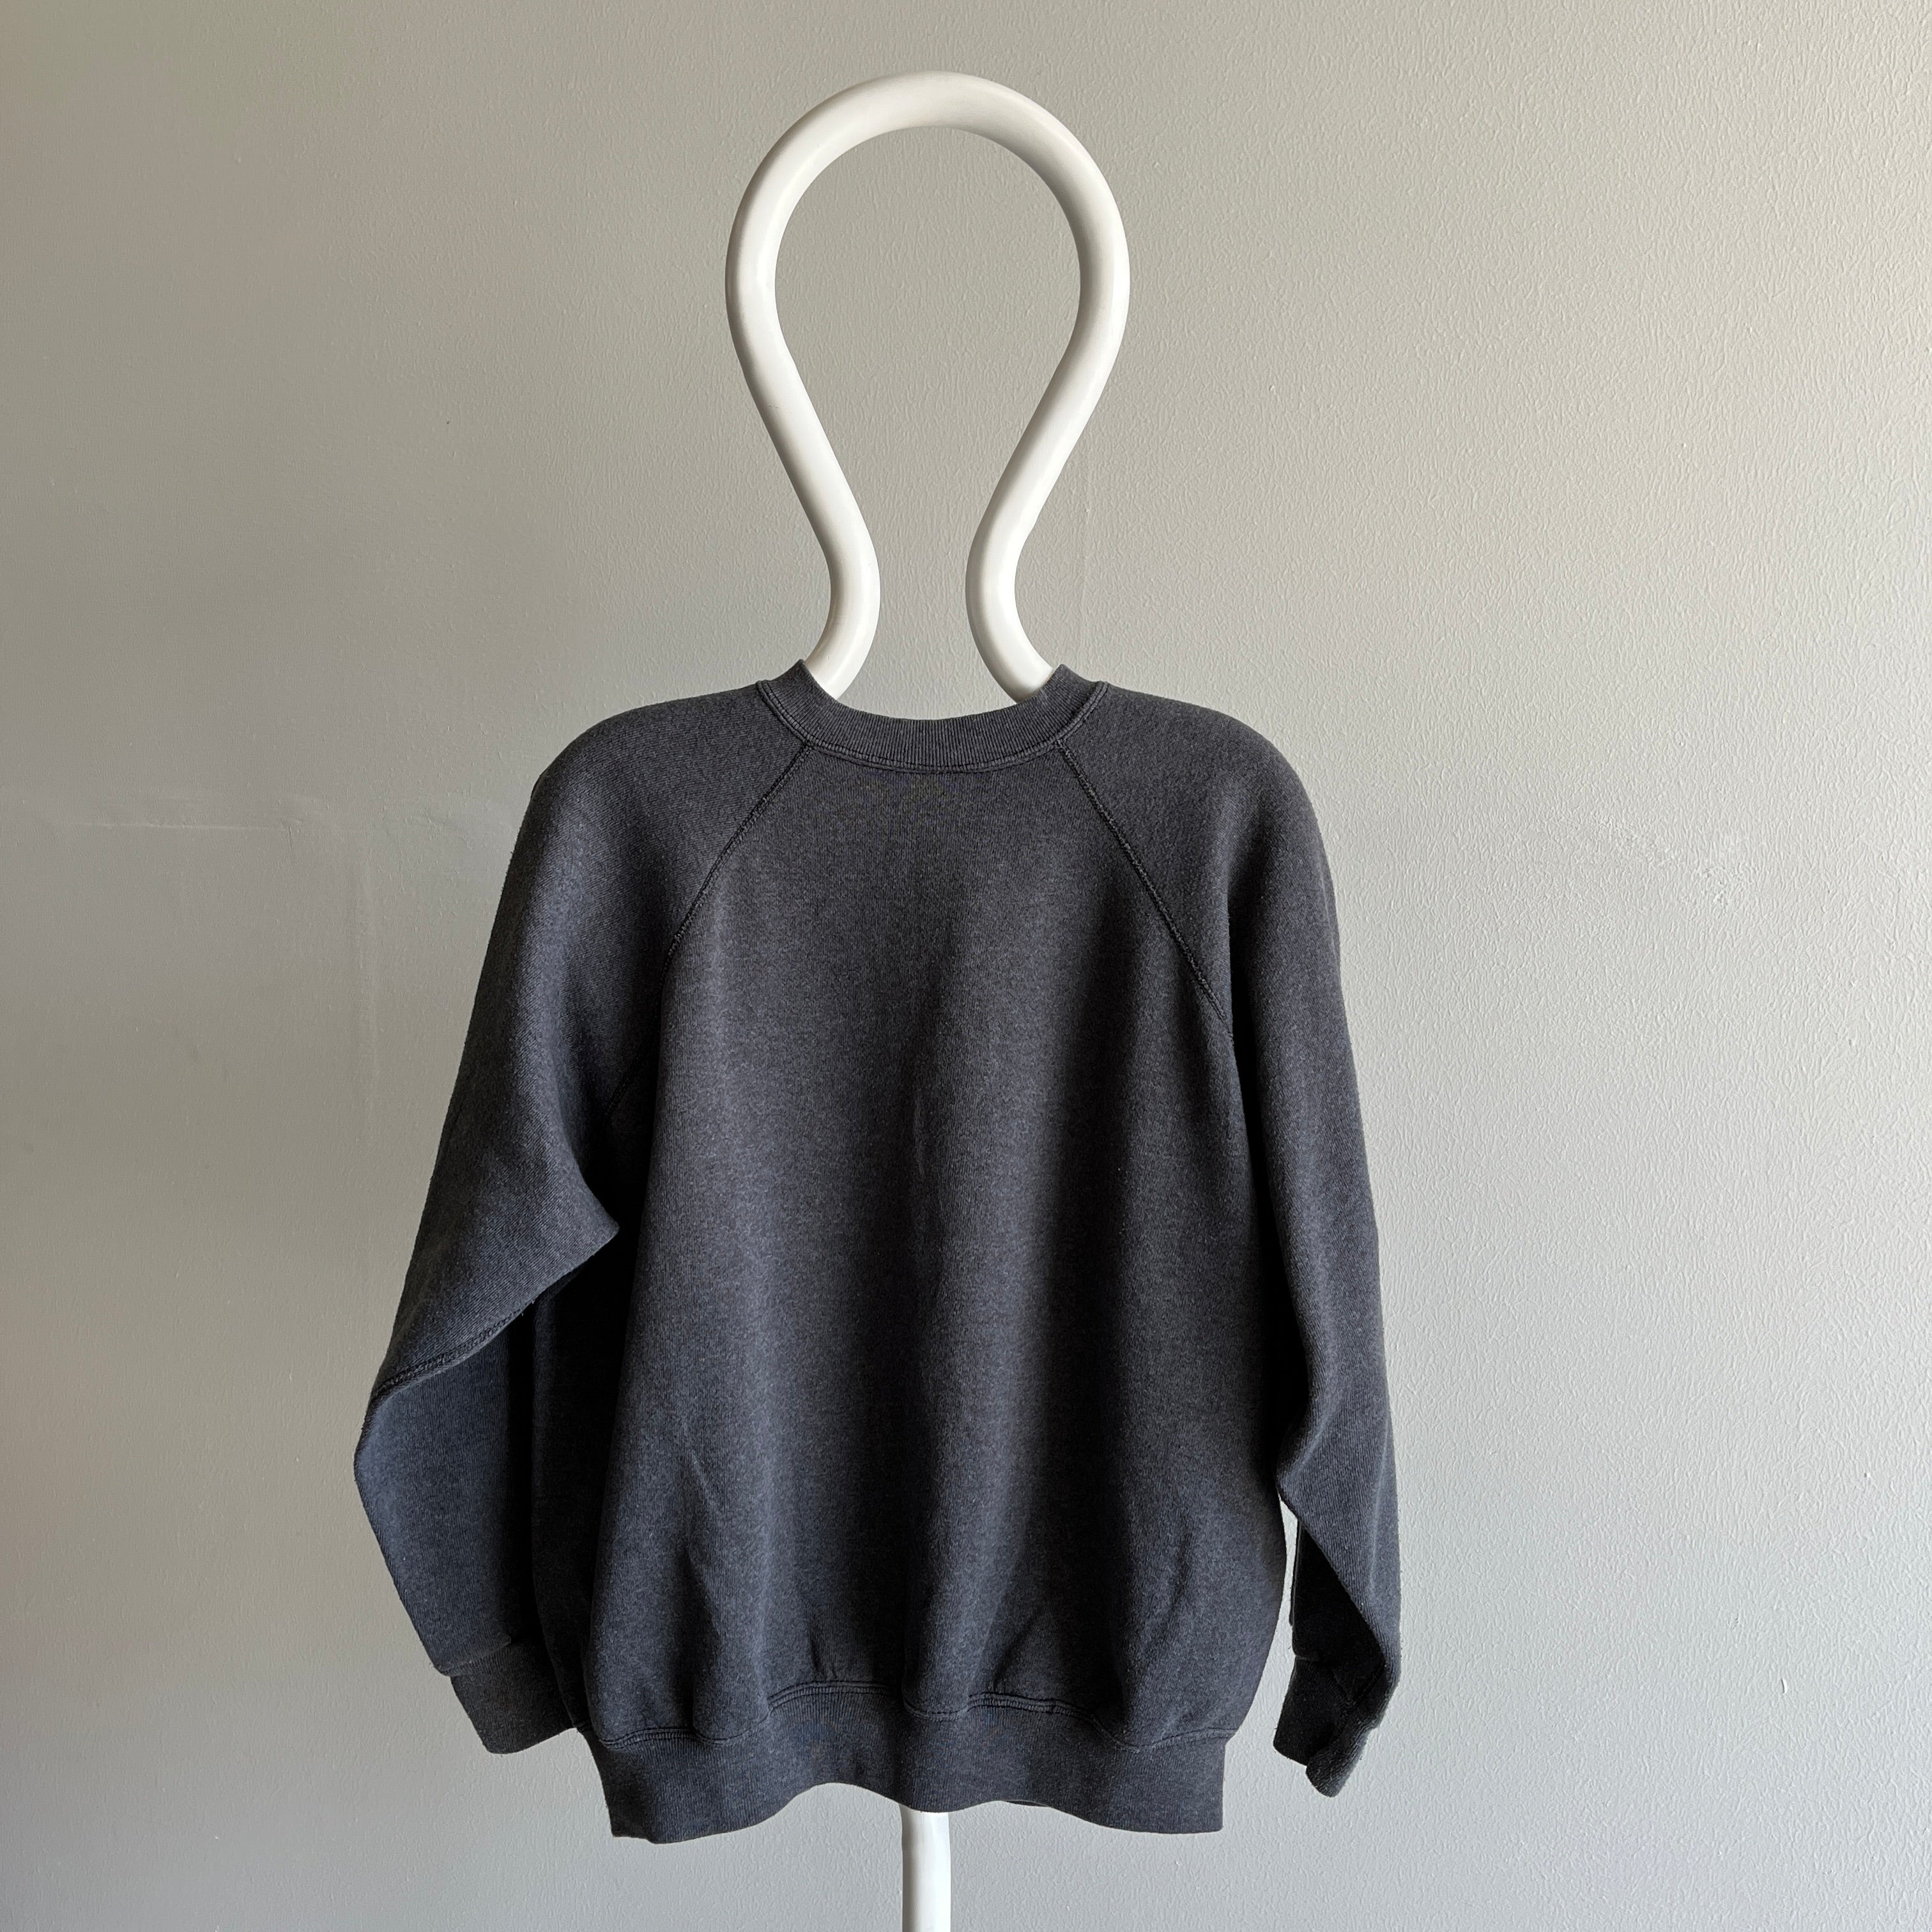 1980s Sweats Appeal Sweat-shirt confortable gris foncé par Tultex